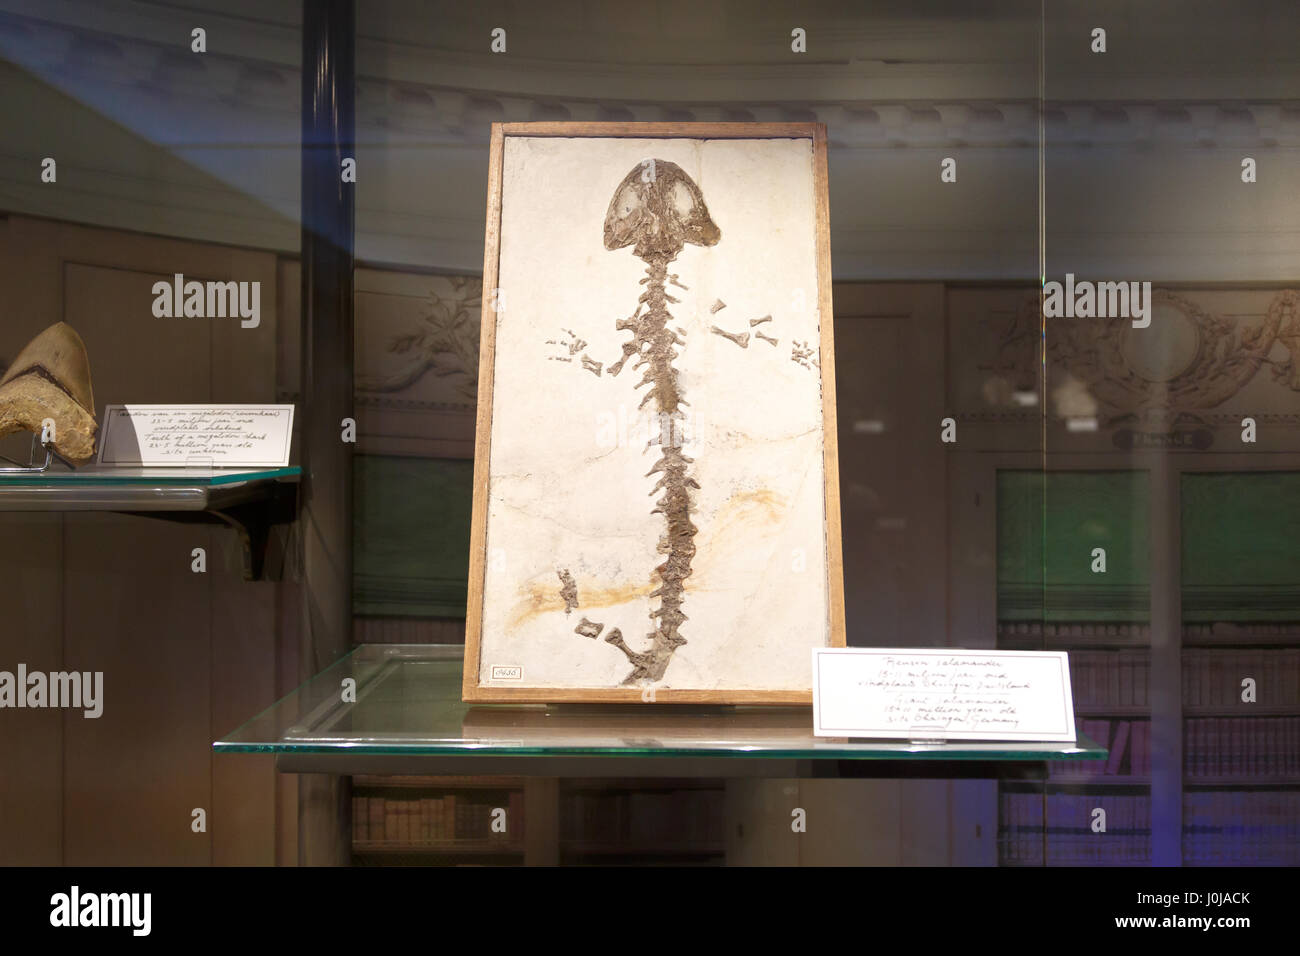 AMSTERDAM, Pays-Bas - 2 juillet 2016 : fiche détaillée de fossiles musée scientifique Nemo. Nemo est un populaire Musée des sciences et de la technologie interactive dans Am Banque D'Images